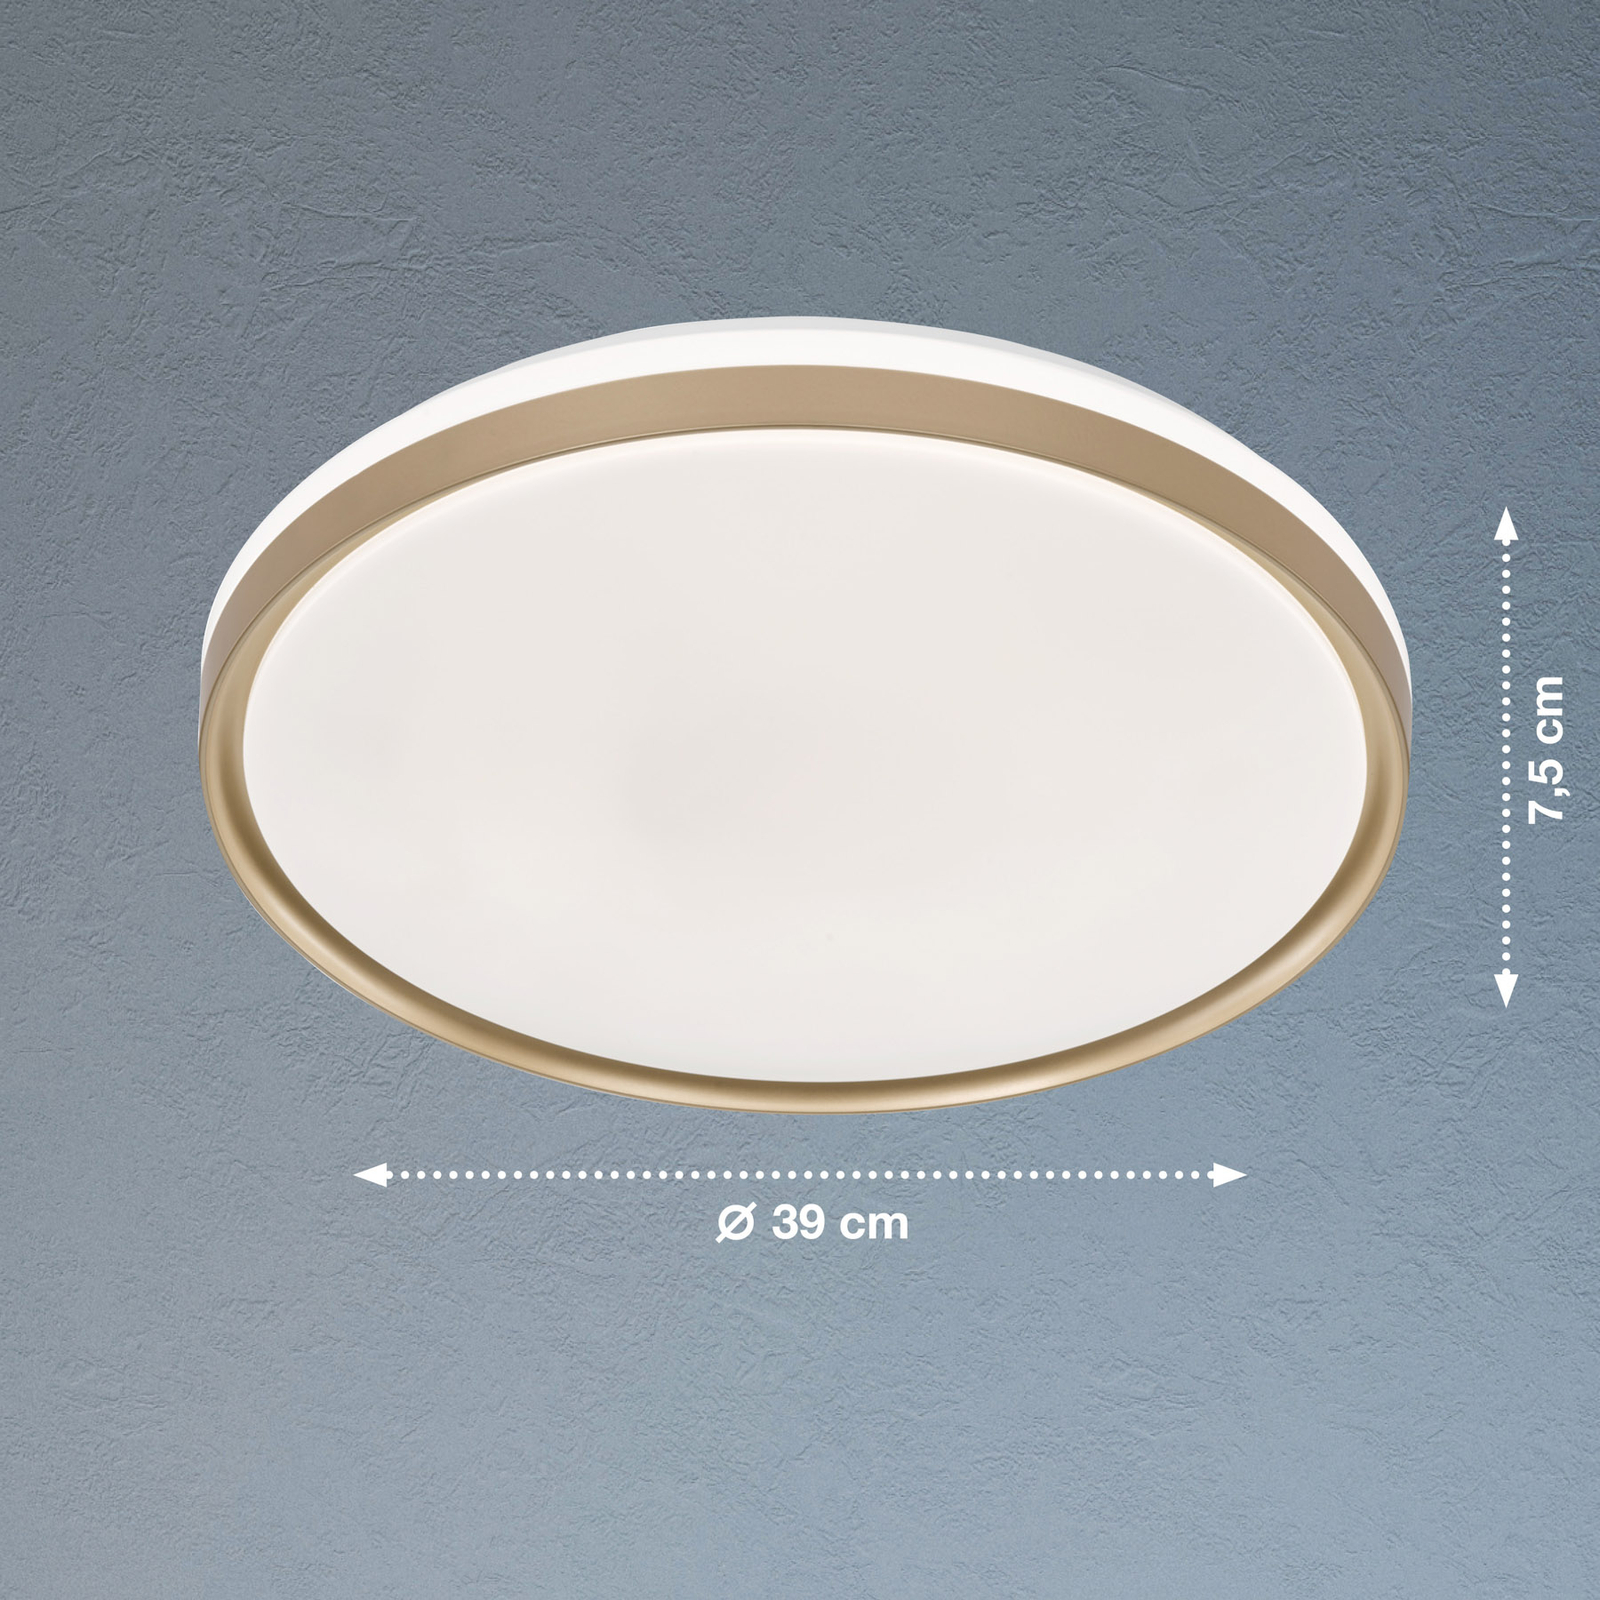 Jaso BS LED ceiling light, Ø 39 cm, gold